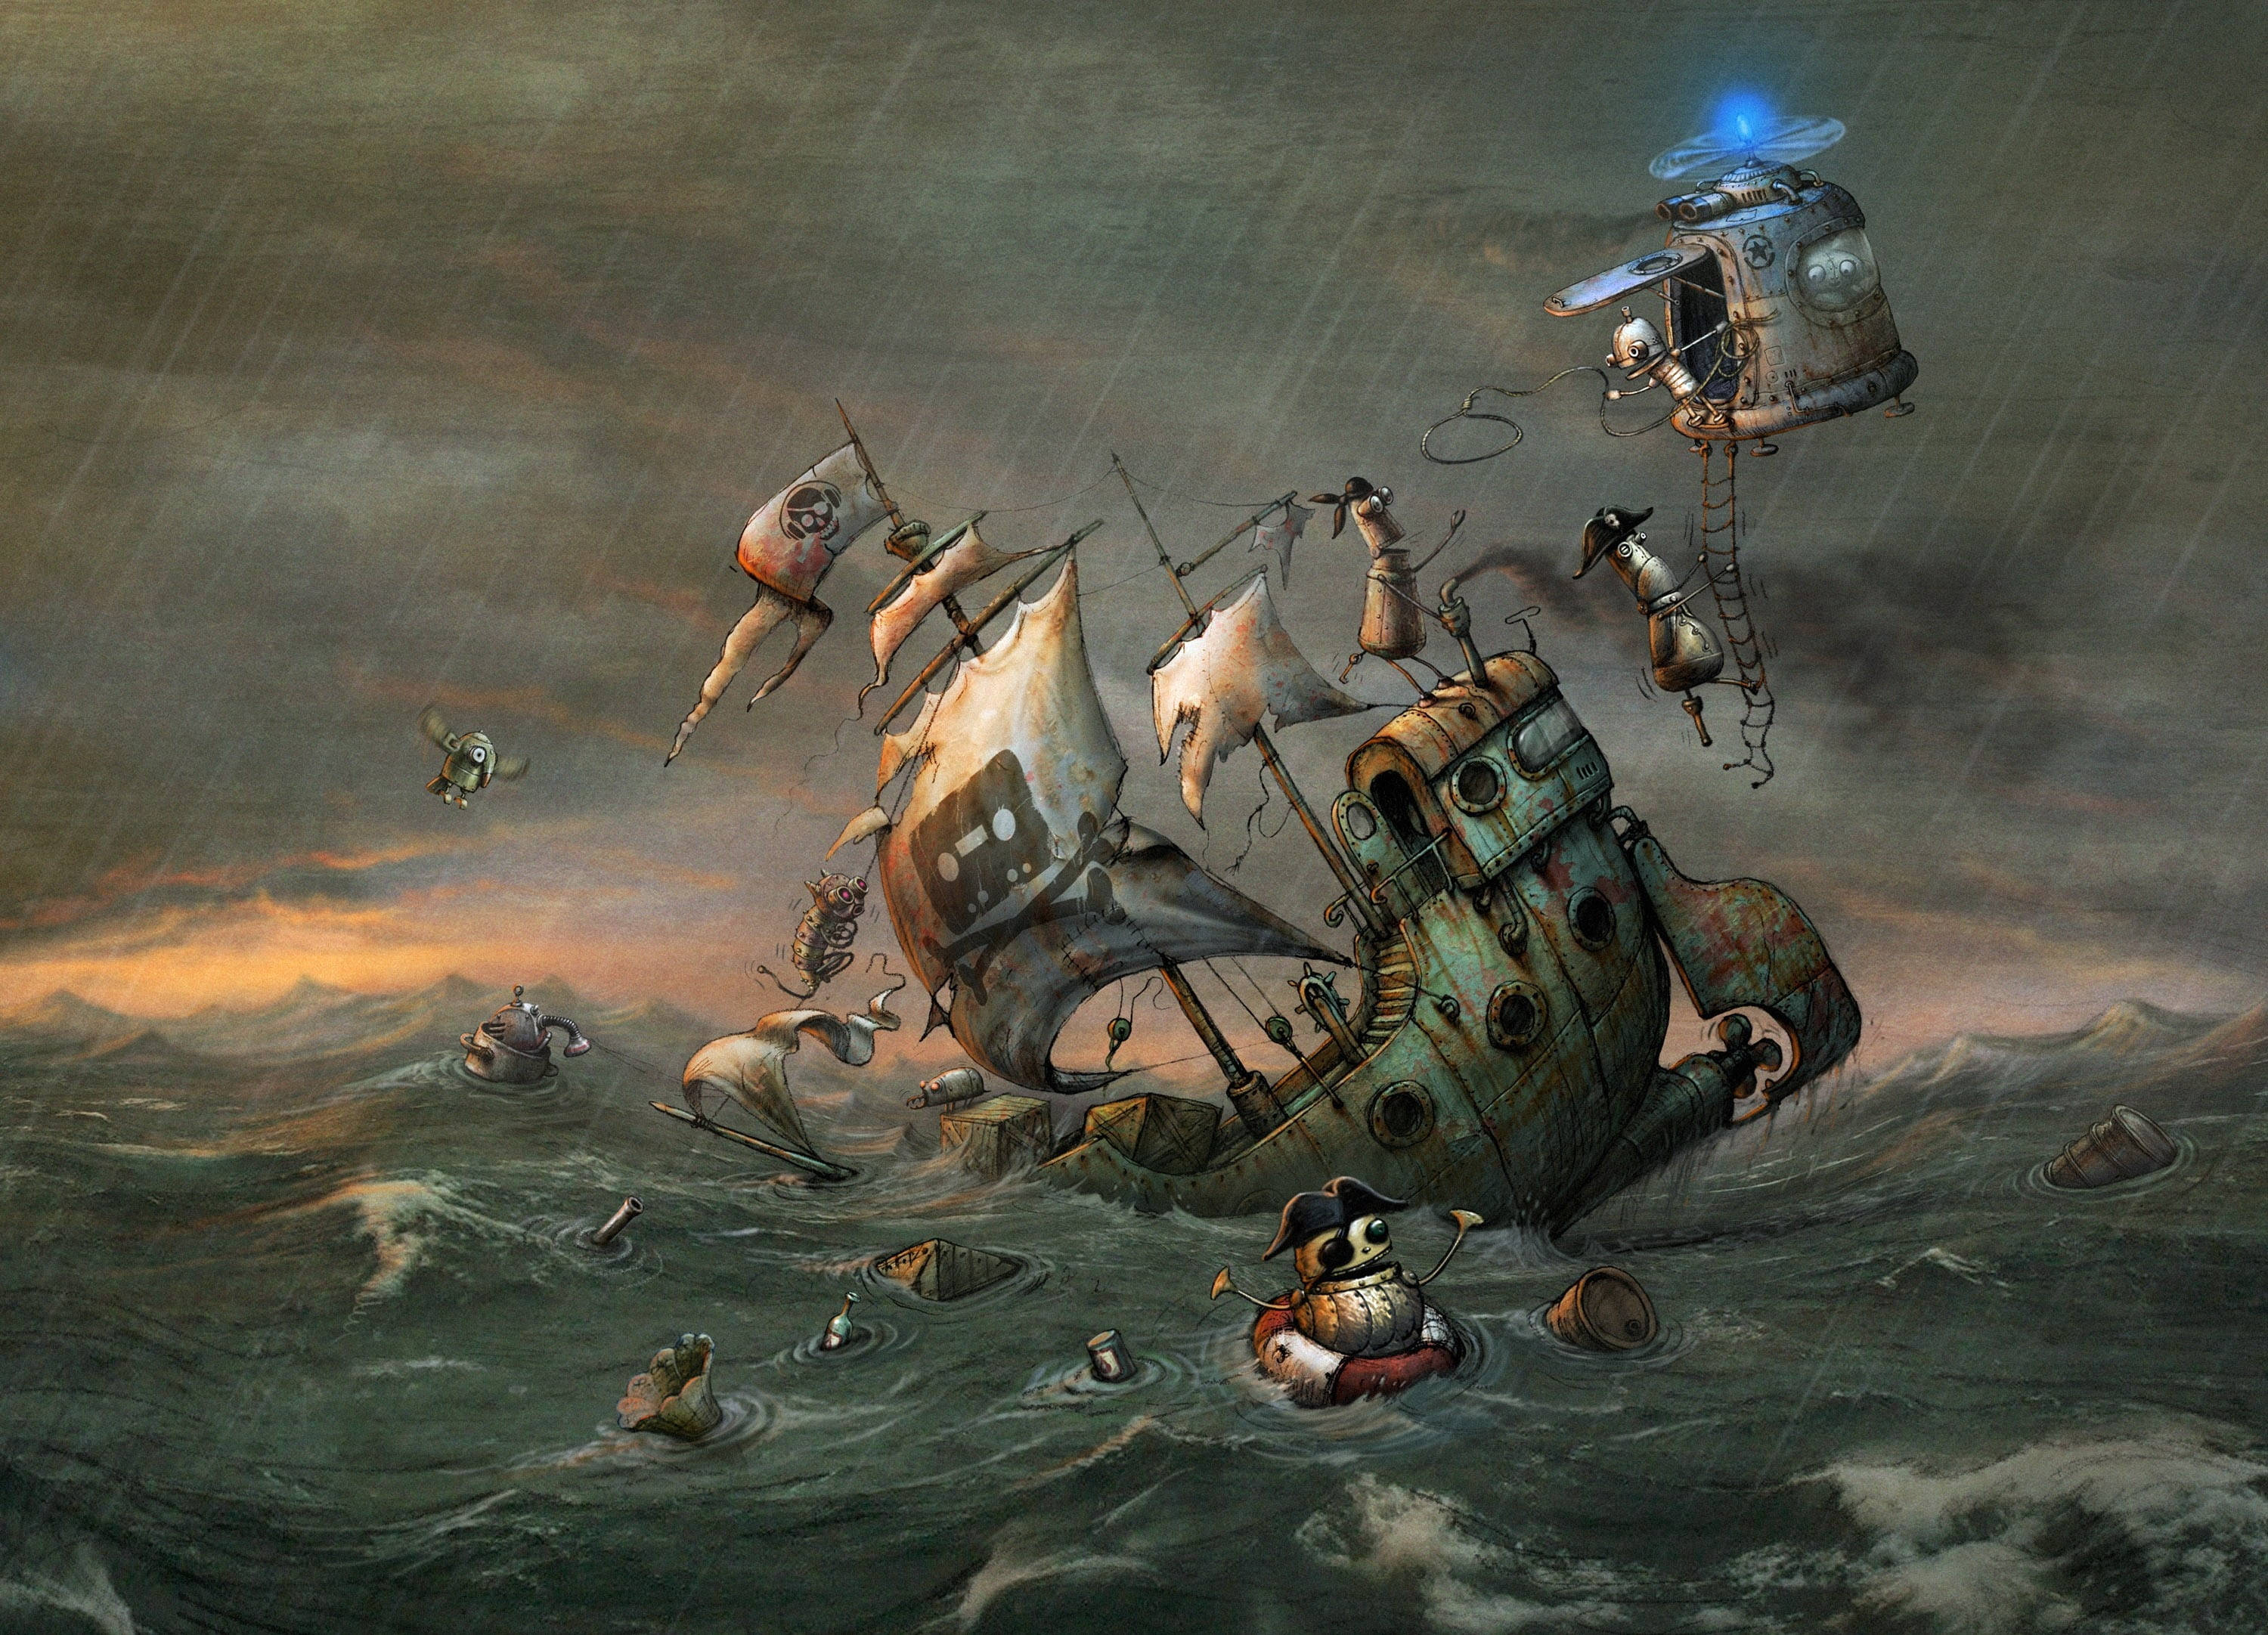 Wallpapers De Steampunk Piratas Robôs Em 4k Completo Disponíveis Agora! Papel de Parede